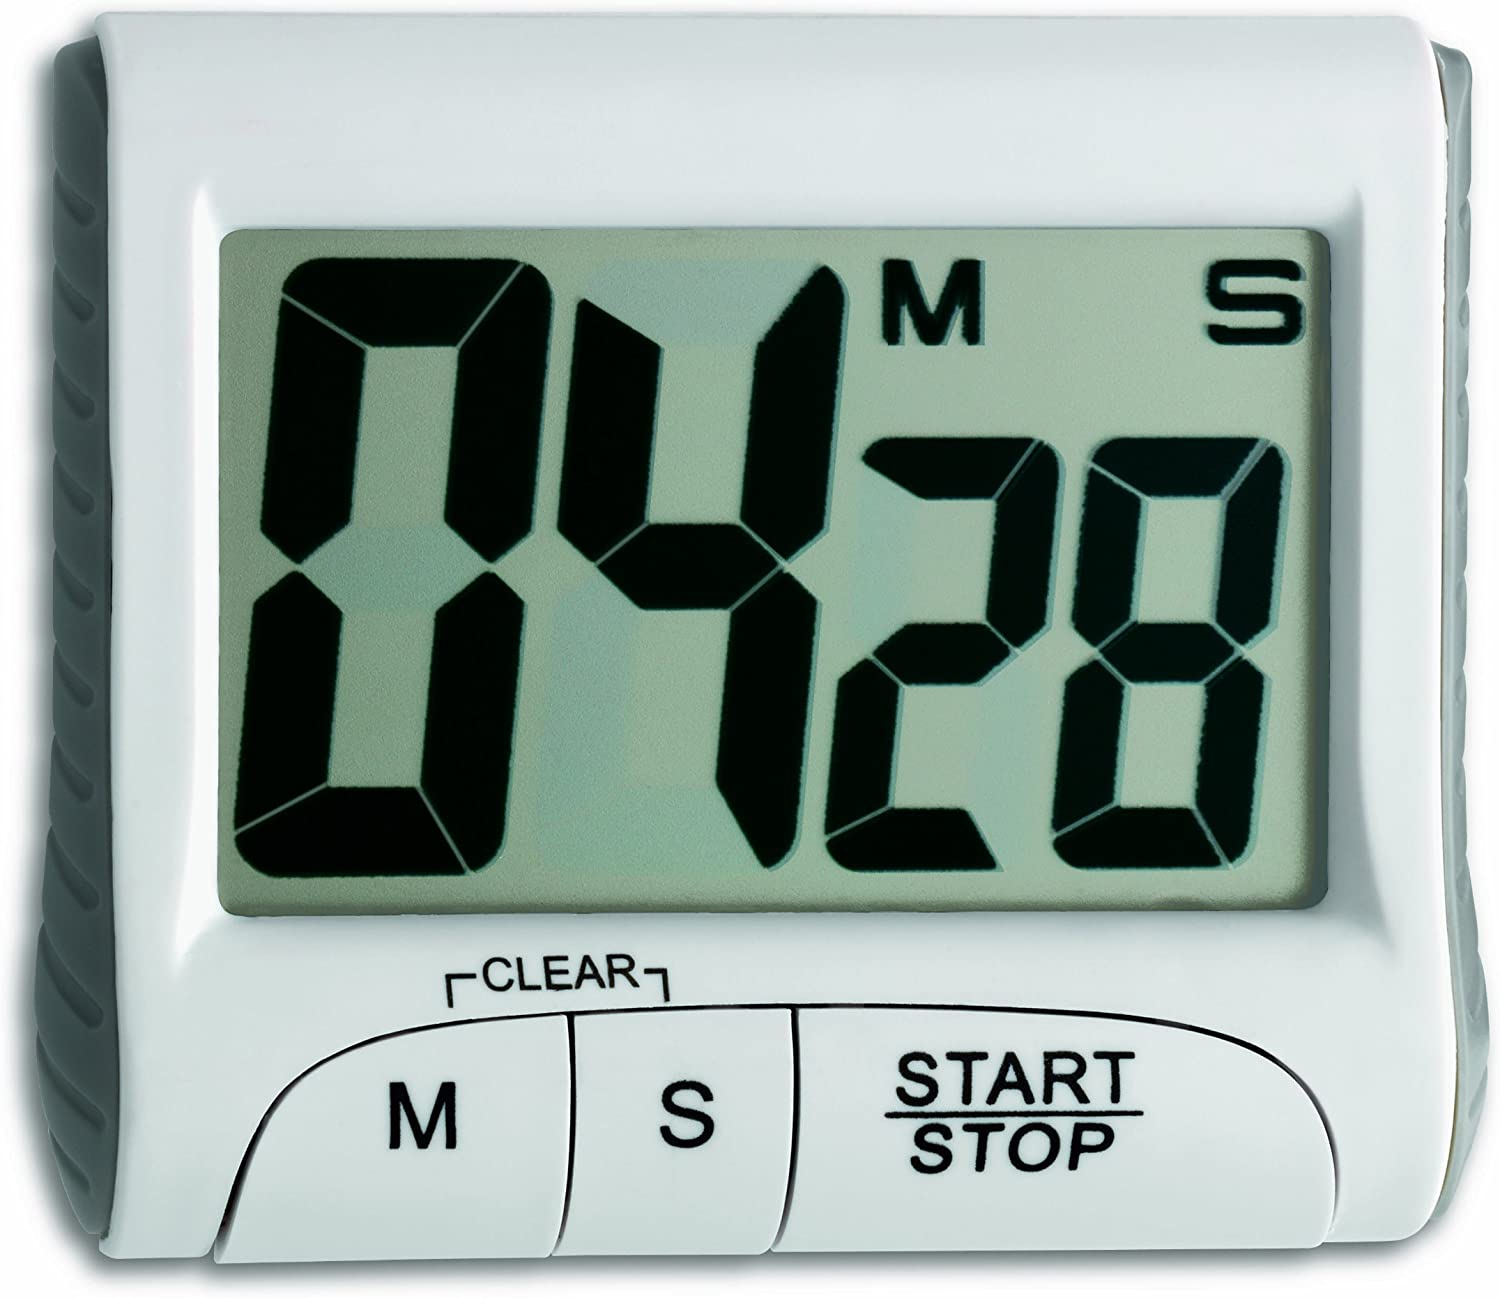 Neue Led Digital Wecker Tabelle Uhr Elektronische Desktop-Uhren